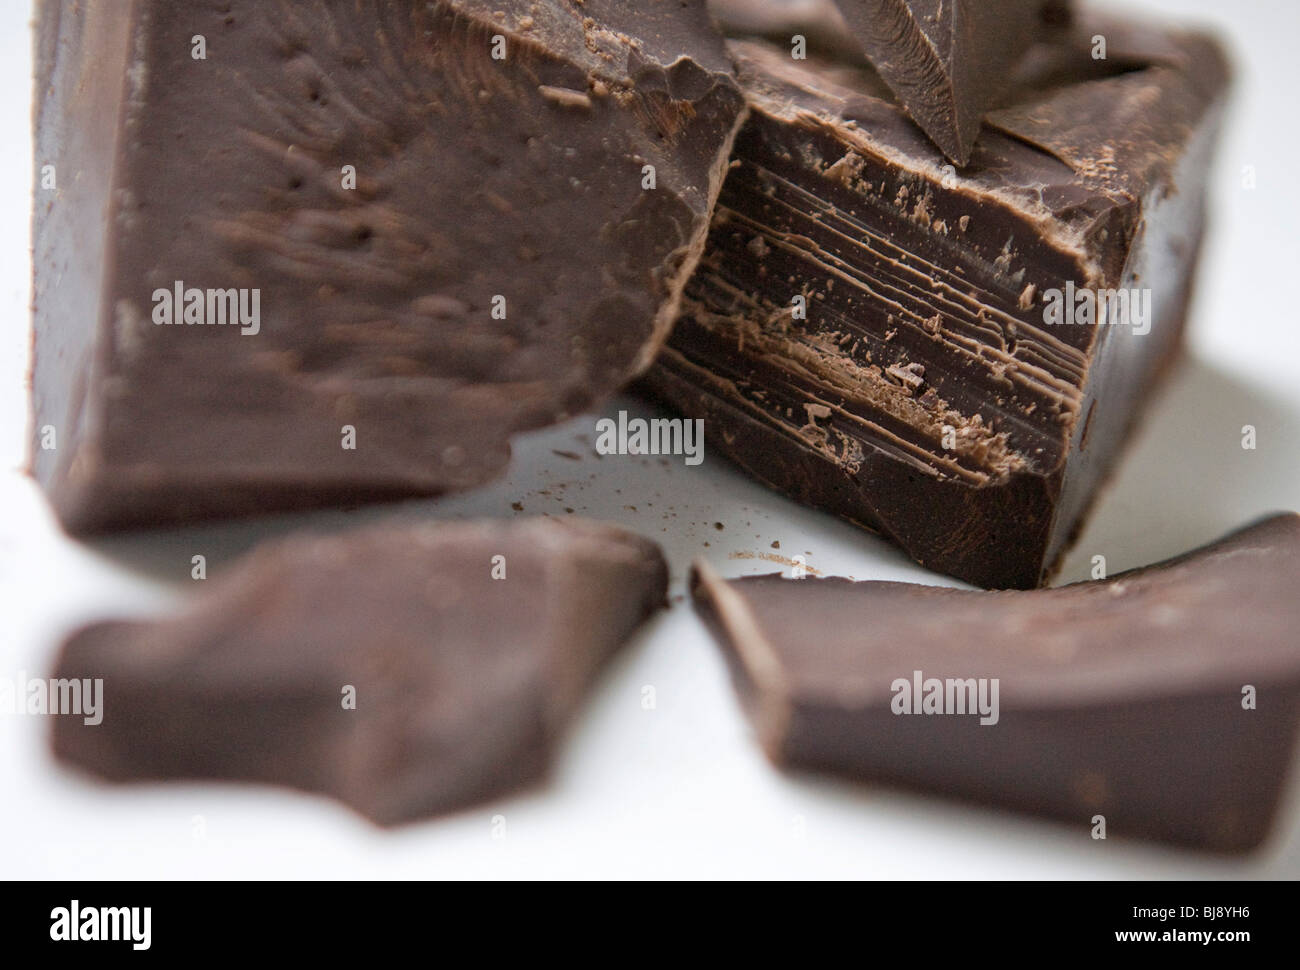 Un blocco di cioccolato fondente. Foto Stock